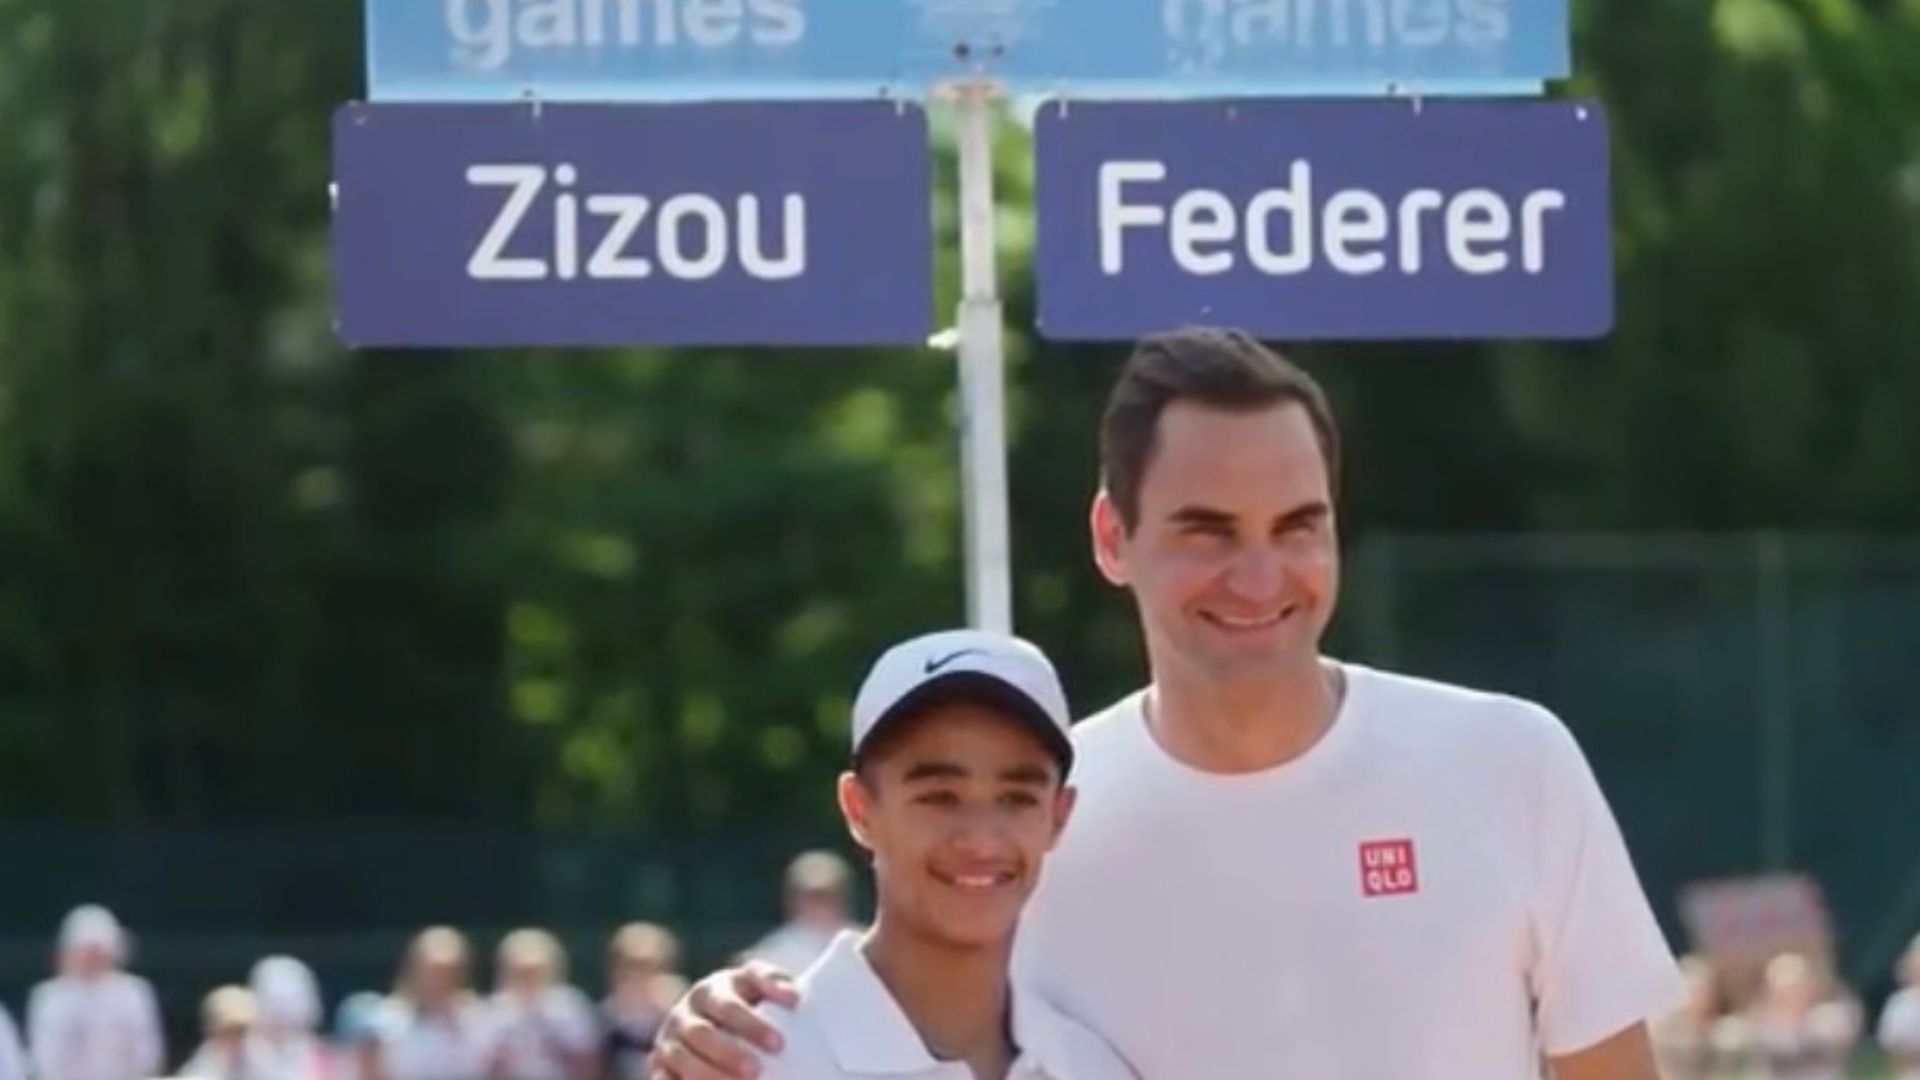 Roger Federer e Zizou, no vídeo promocional